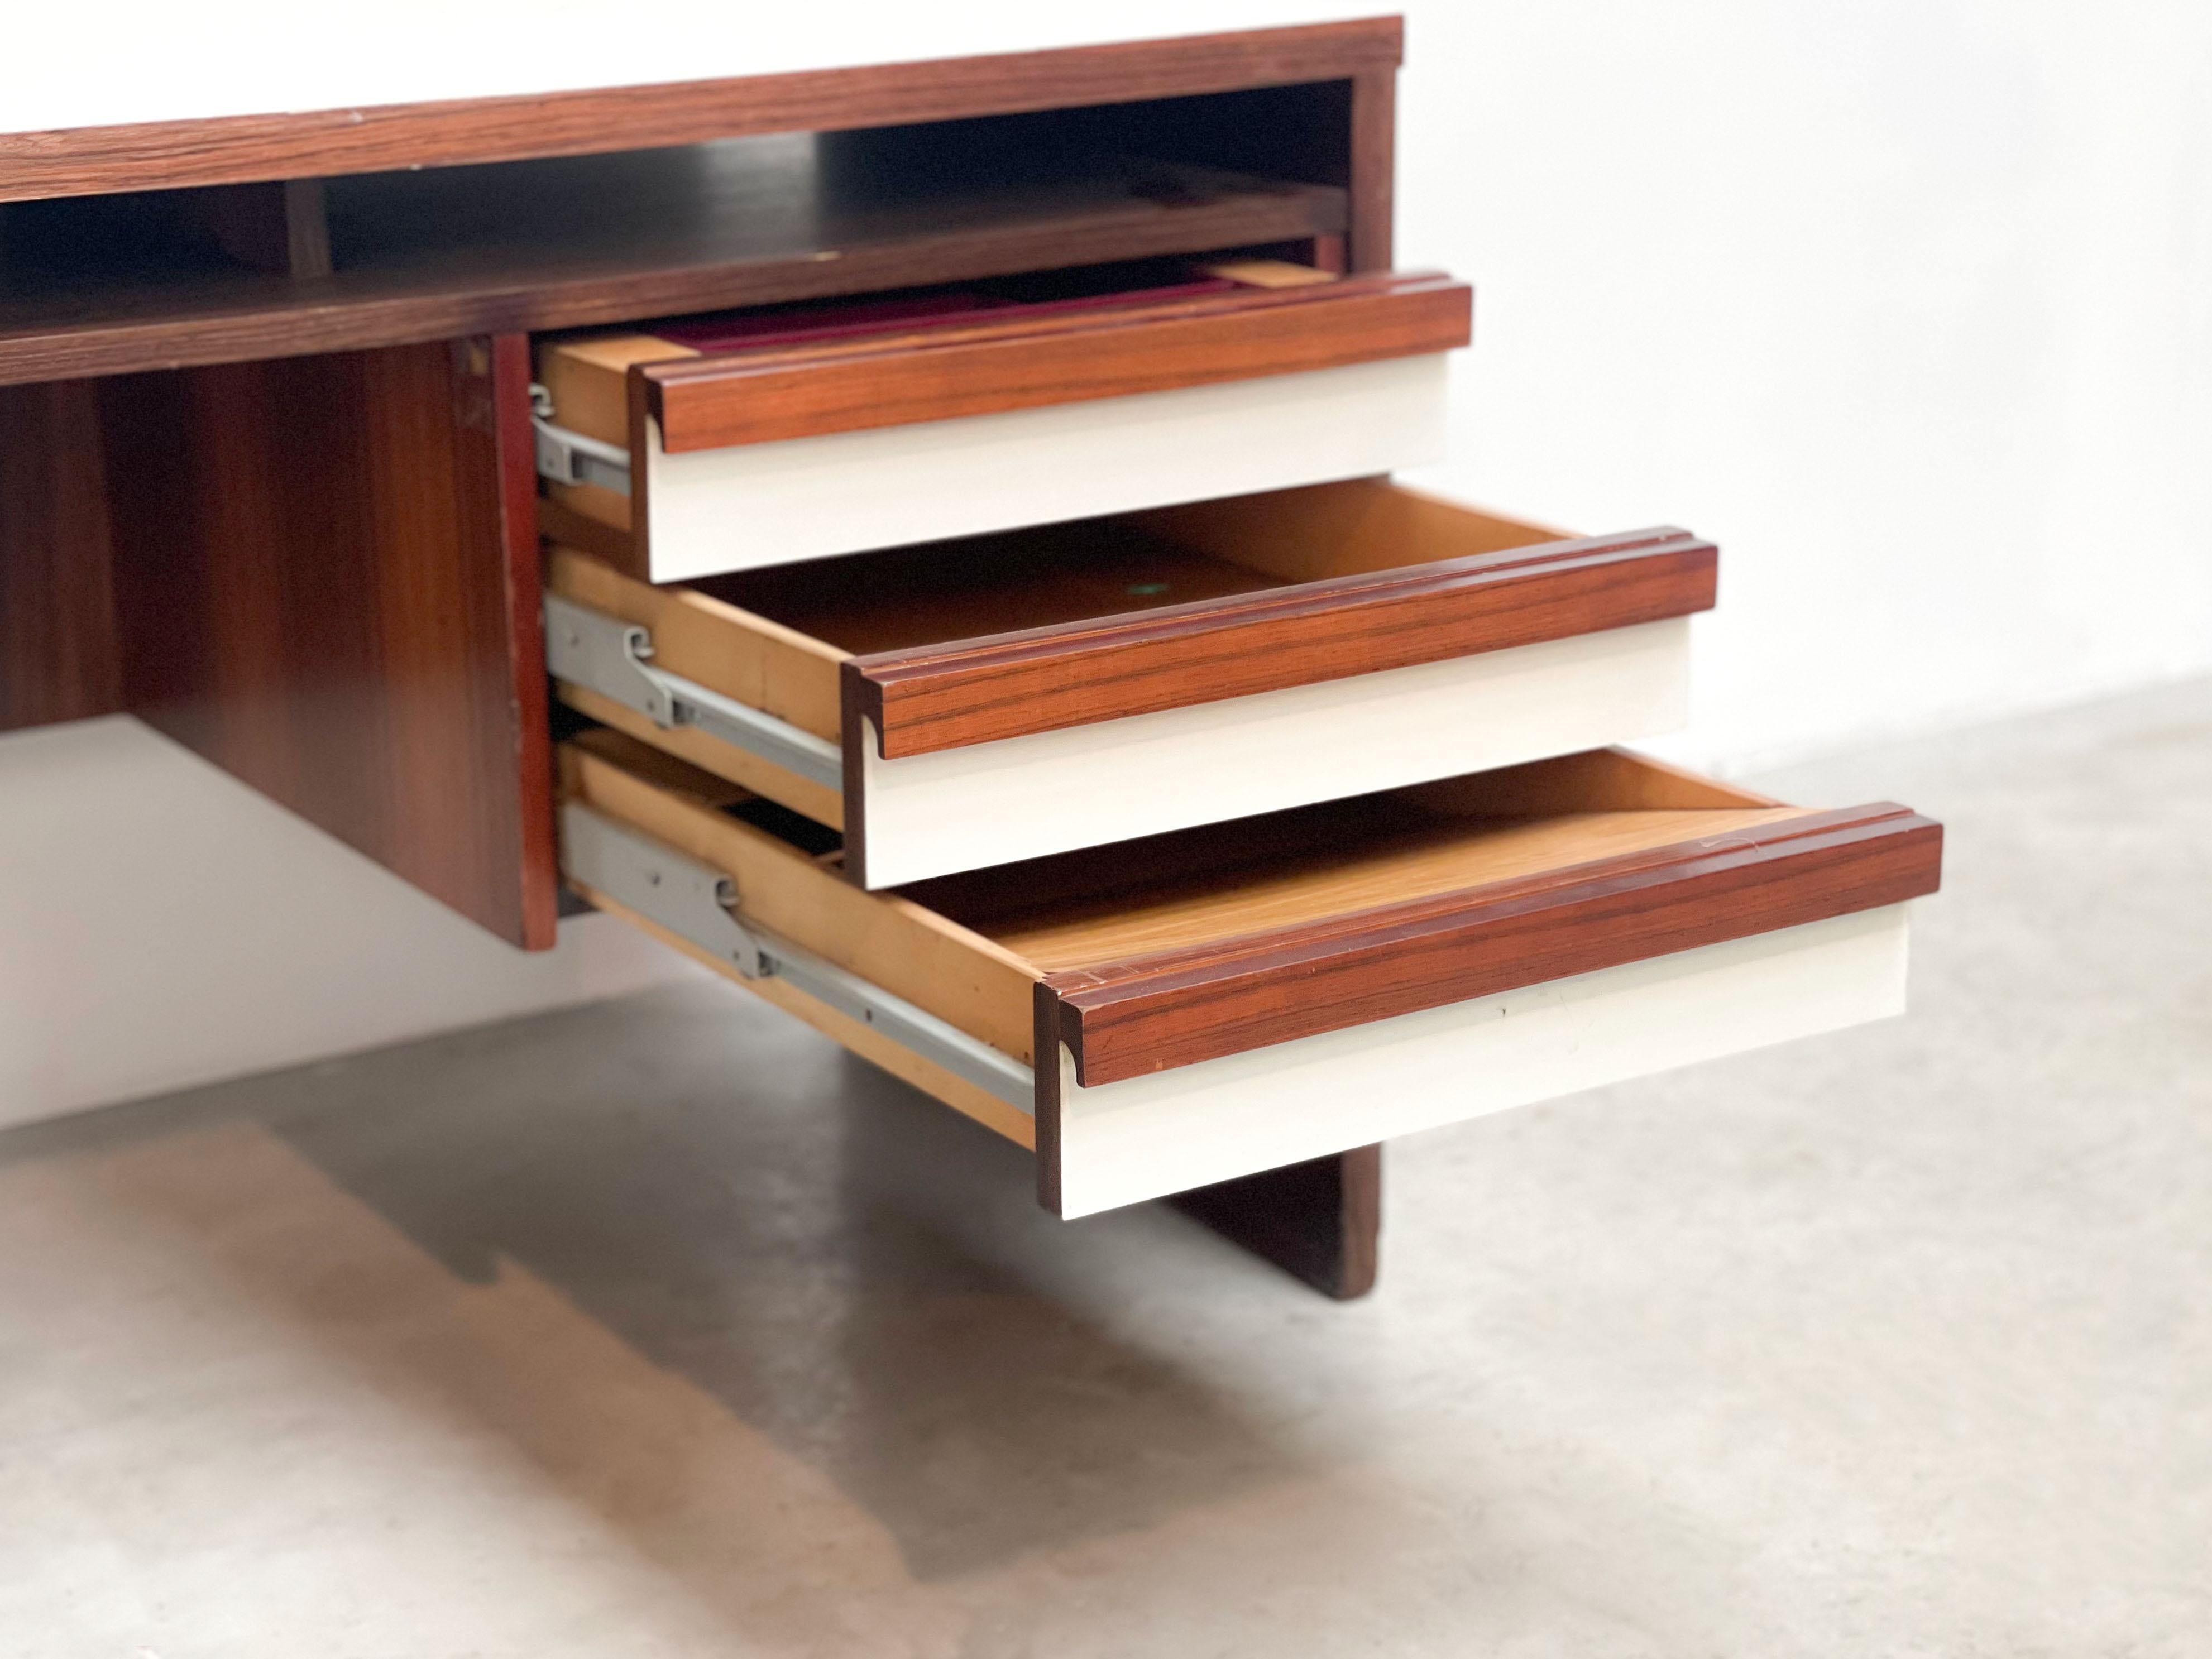 Wood Midcentury Belgian desk by V-form